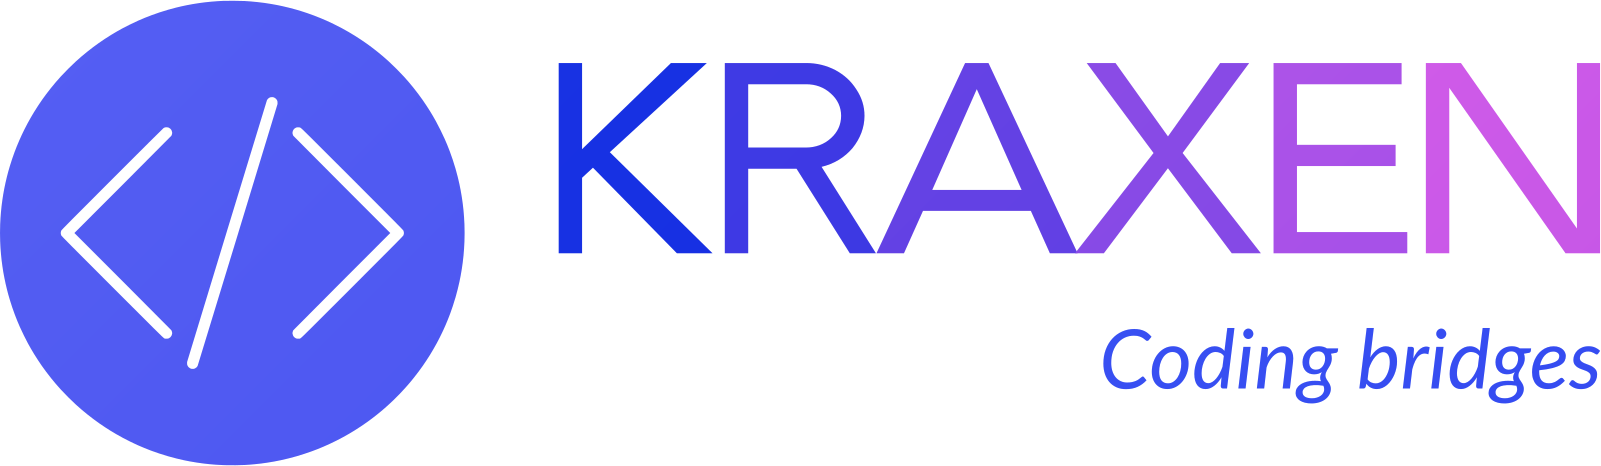 Kraxen logo